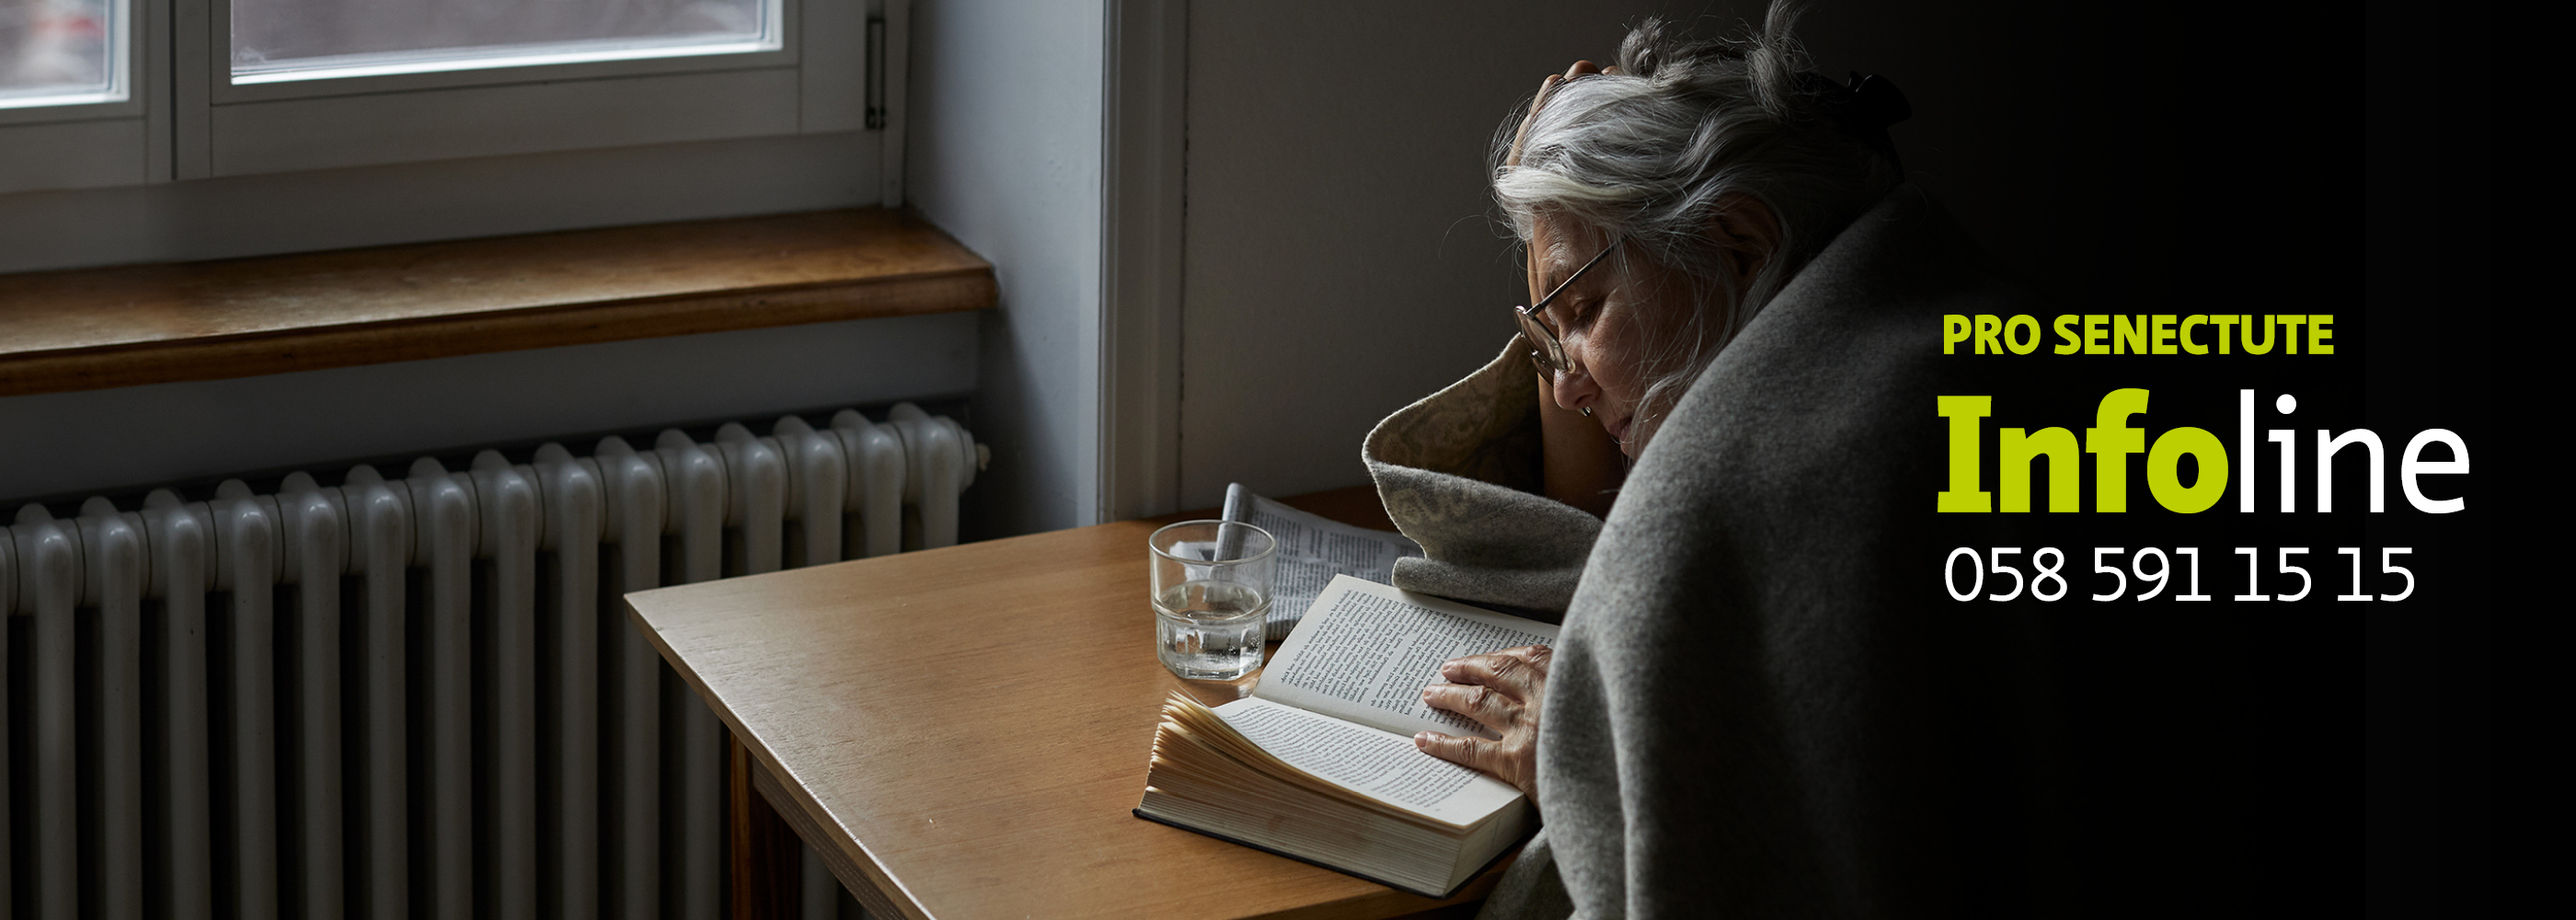 Ältere Frau mit Decke liest ein Buch.